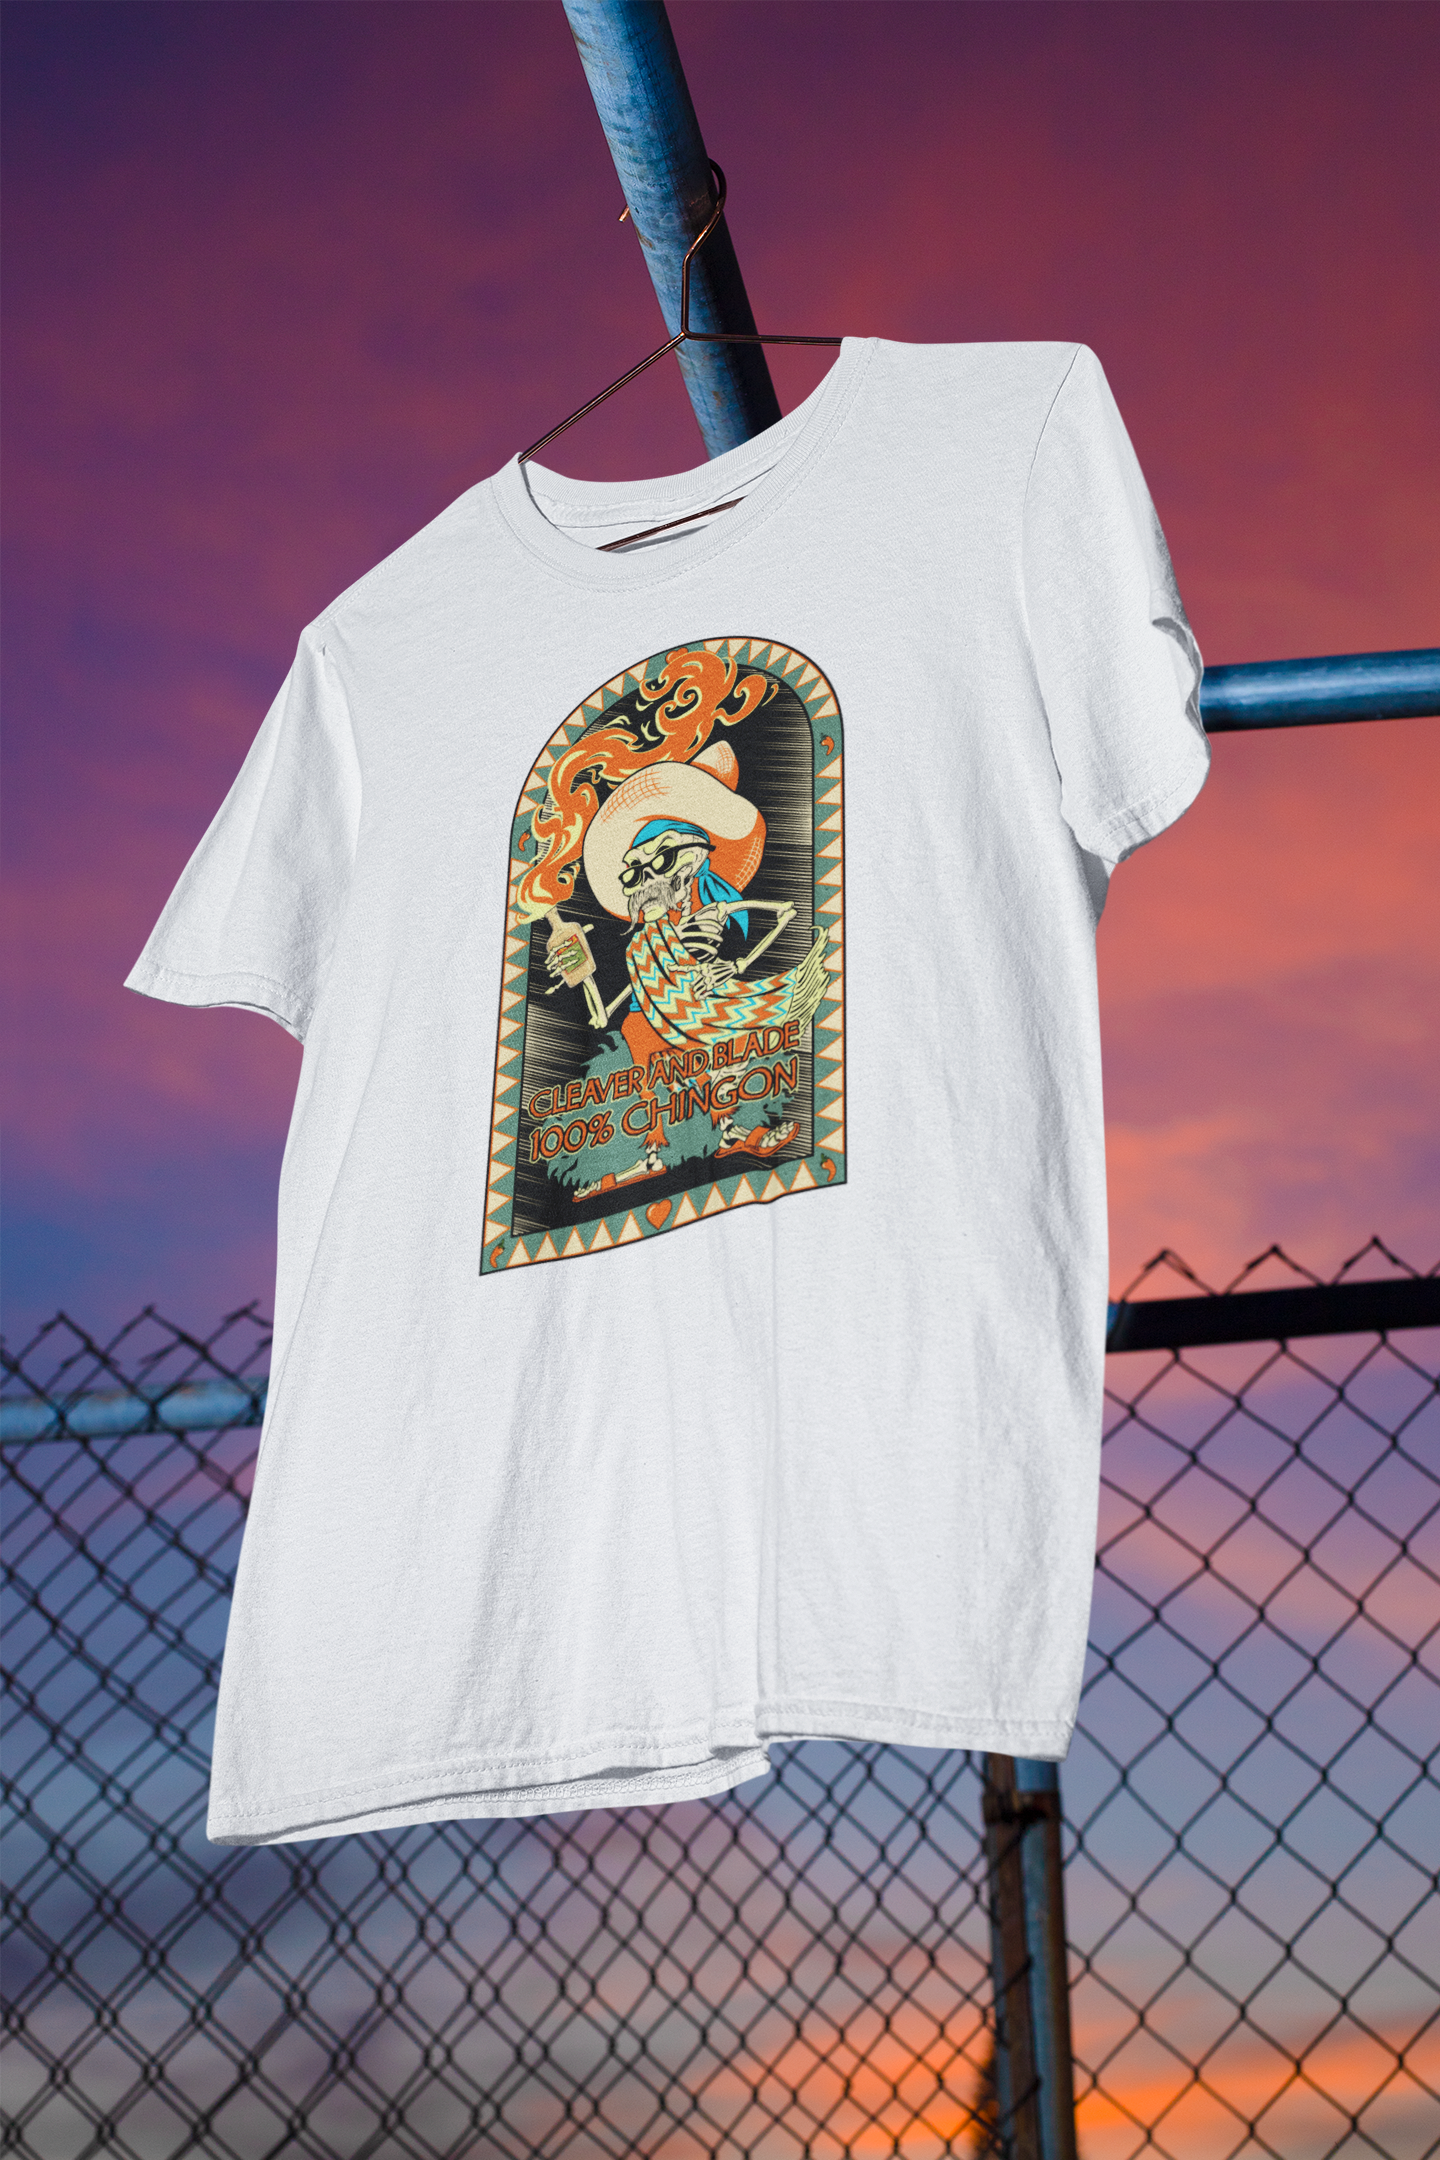 100% Chingon T-Shirt Cleaverandblade.com